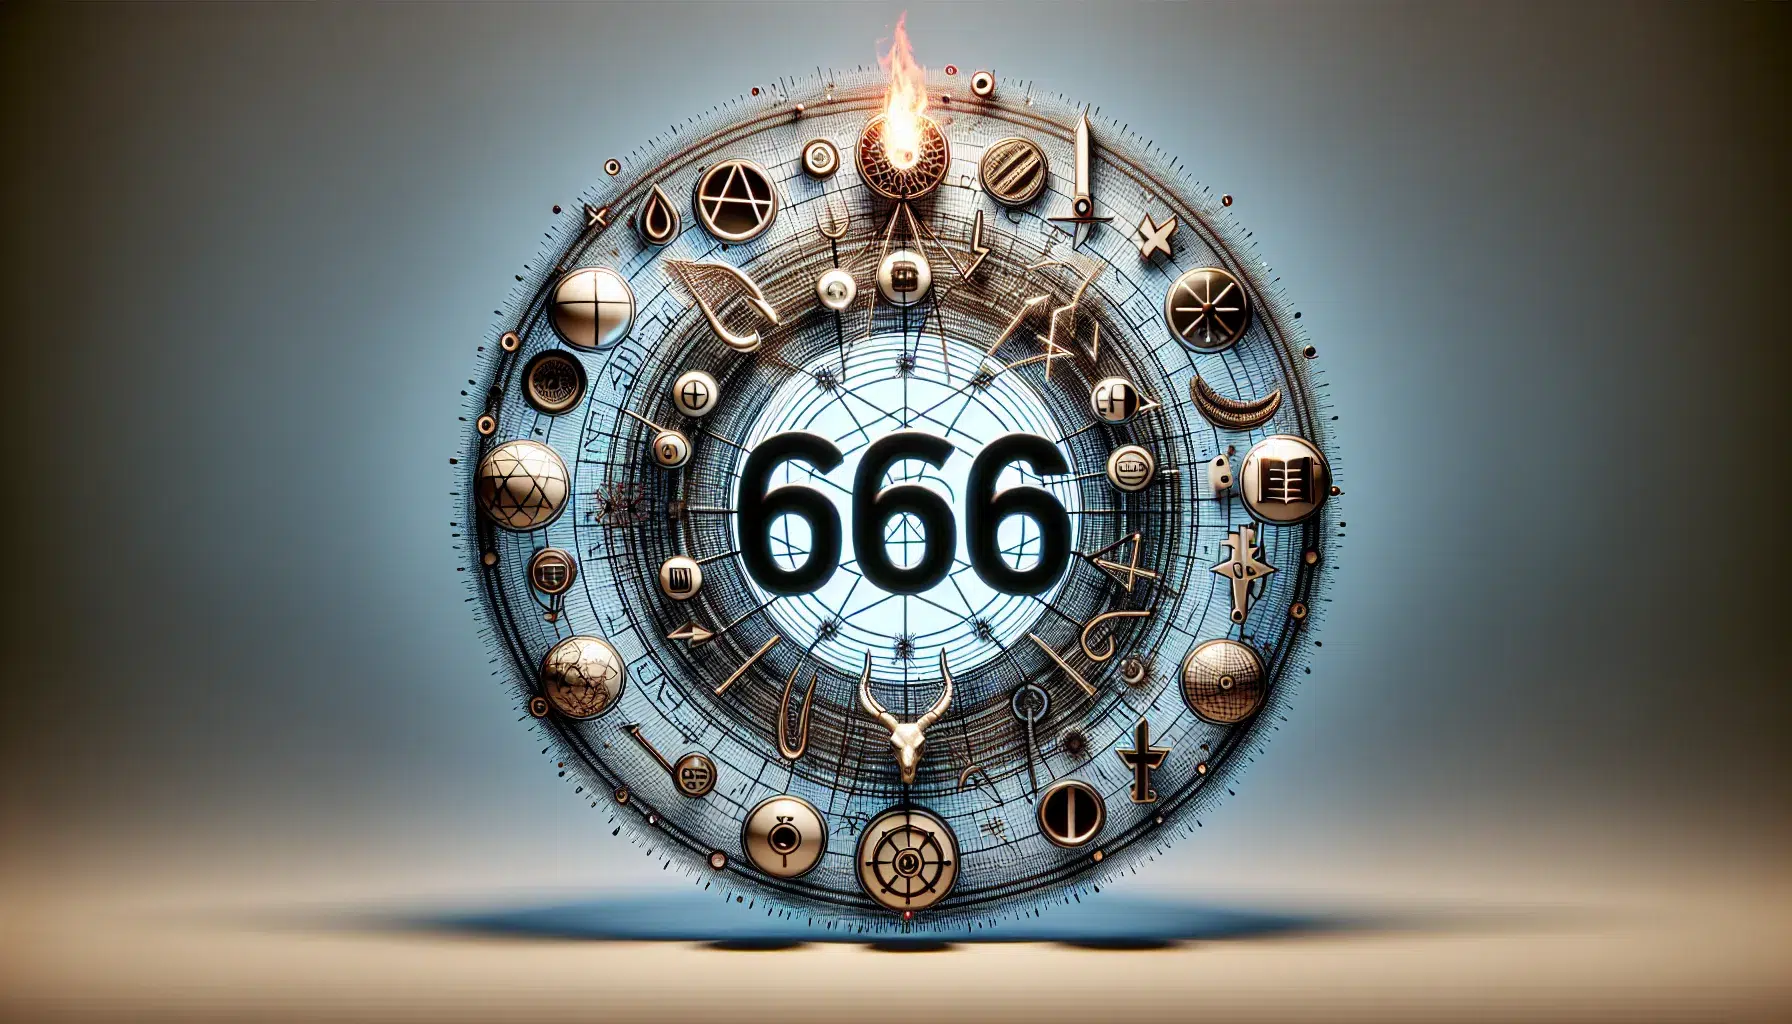 Ilustración del número 666 rodeado de simbología bíblica